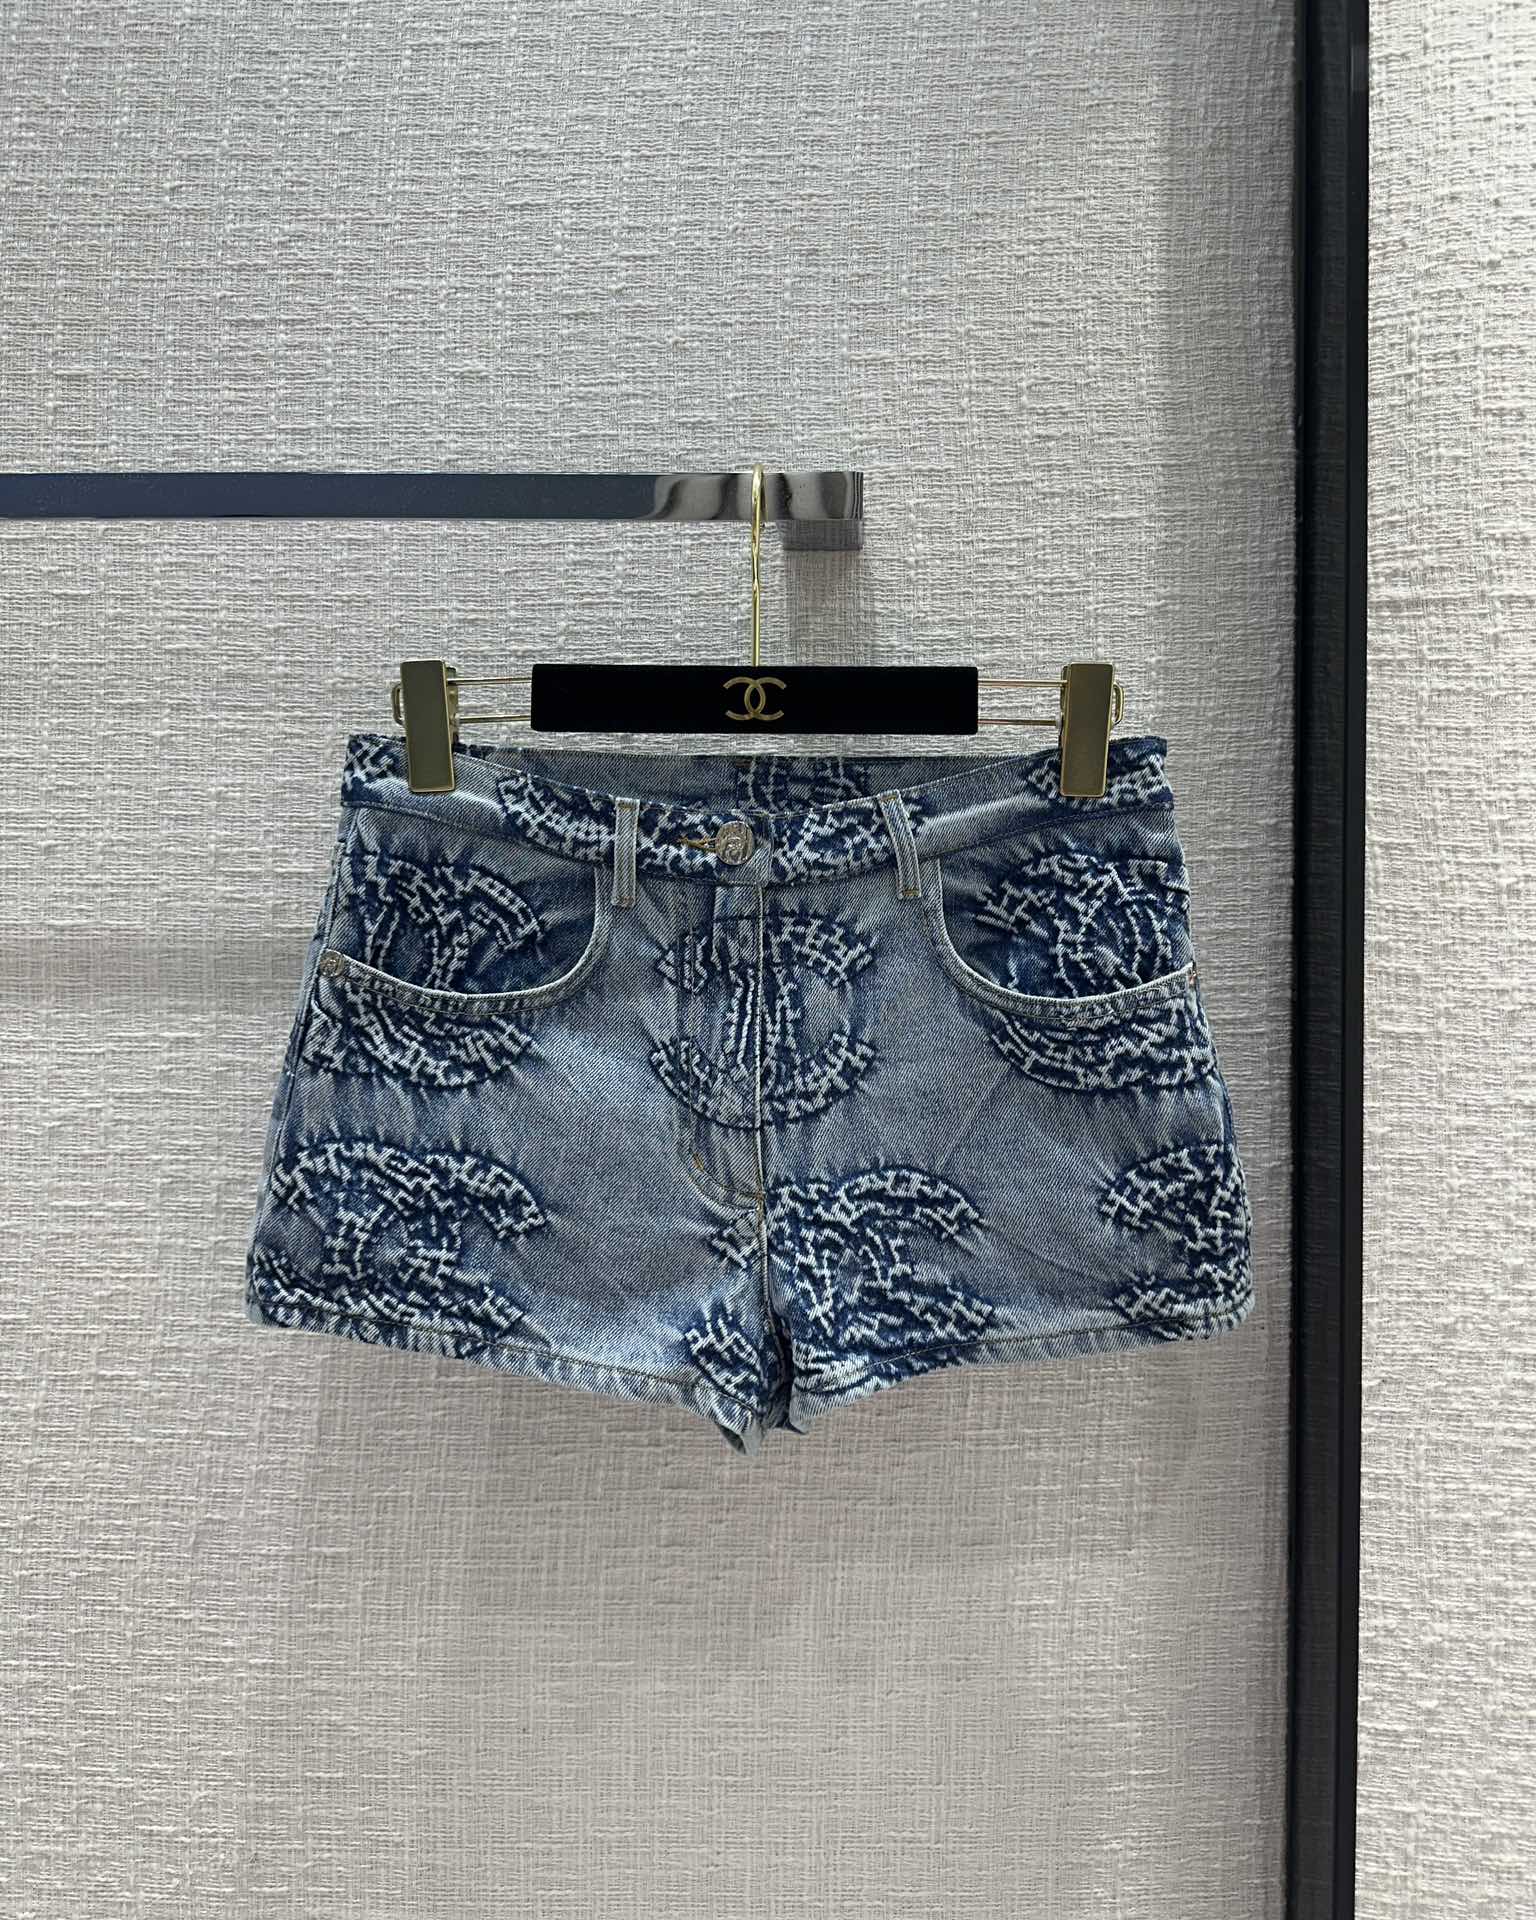 Chanel Ropa Pantalones cortos Blanco Hardware de oro Colección verano